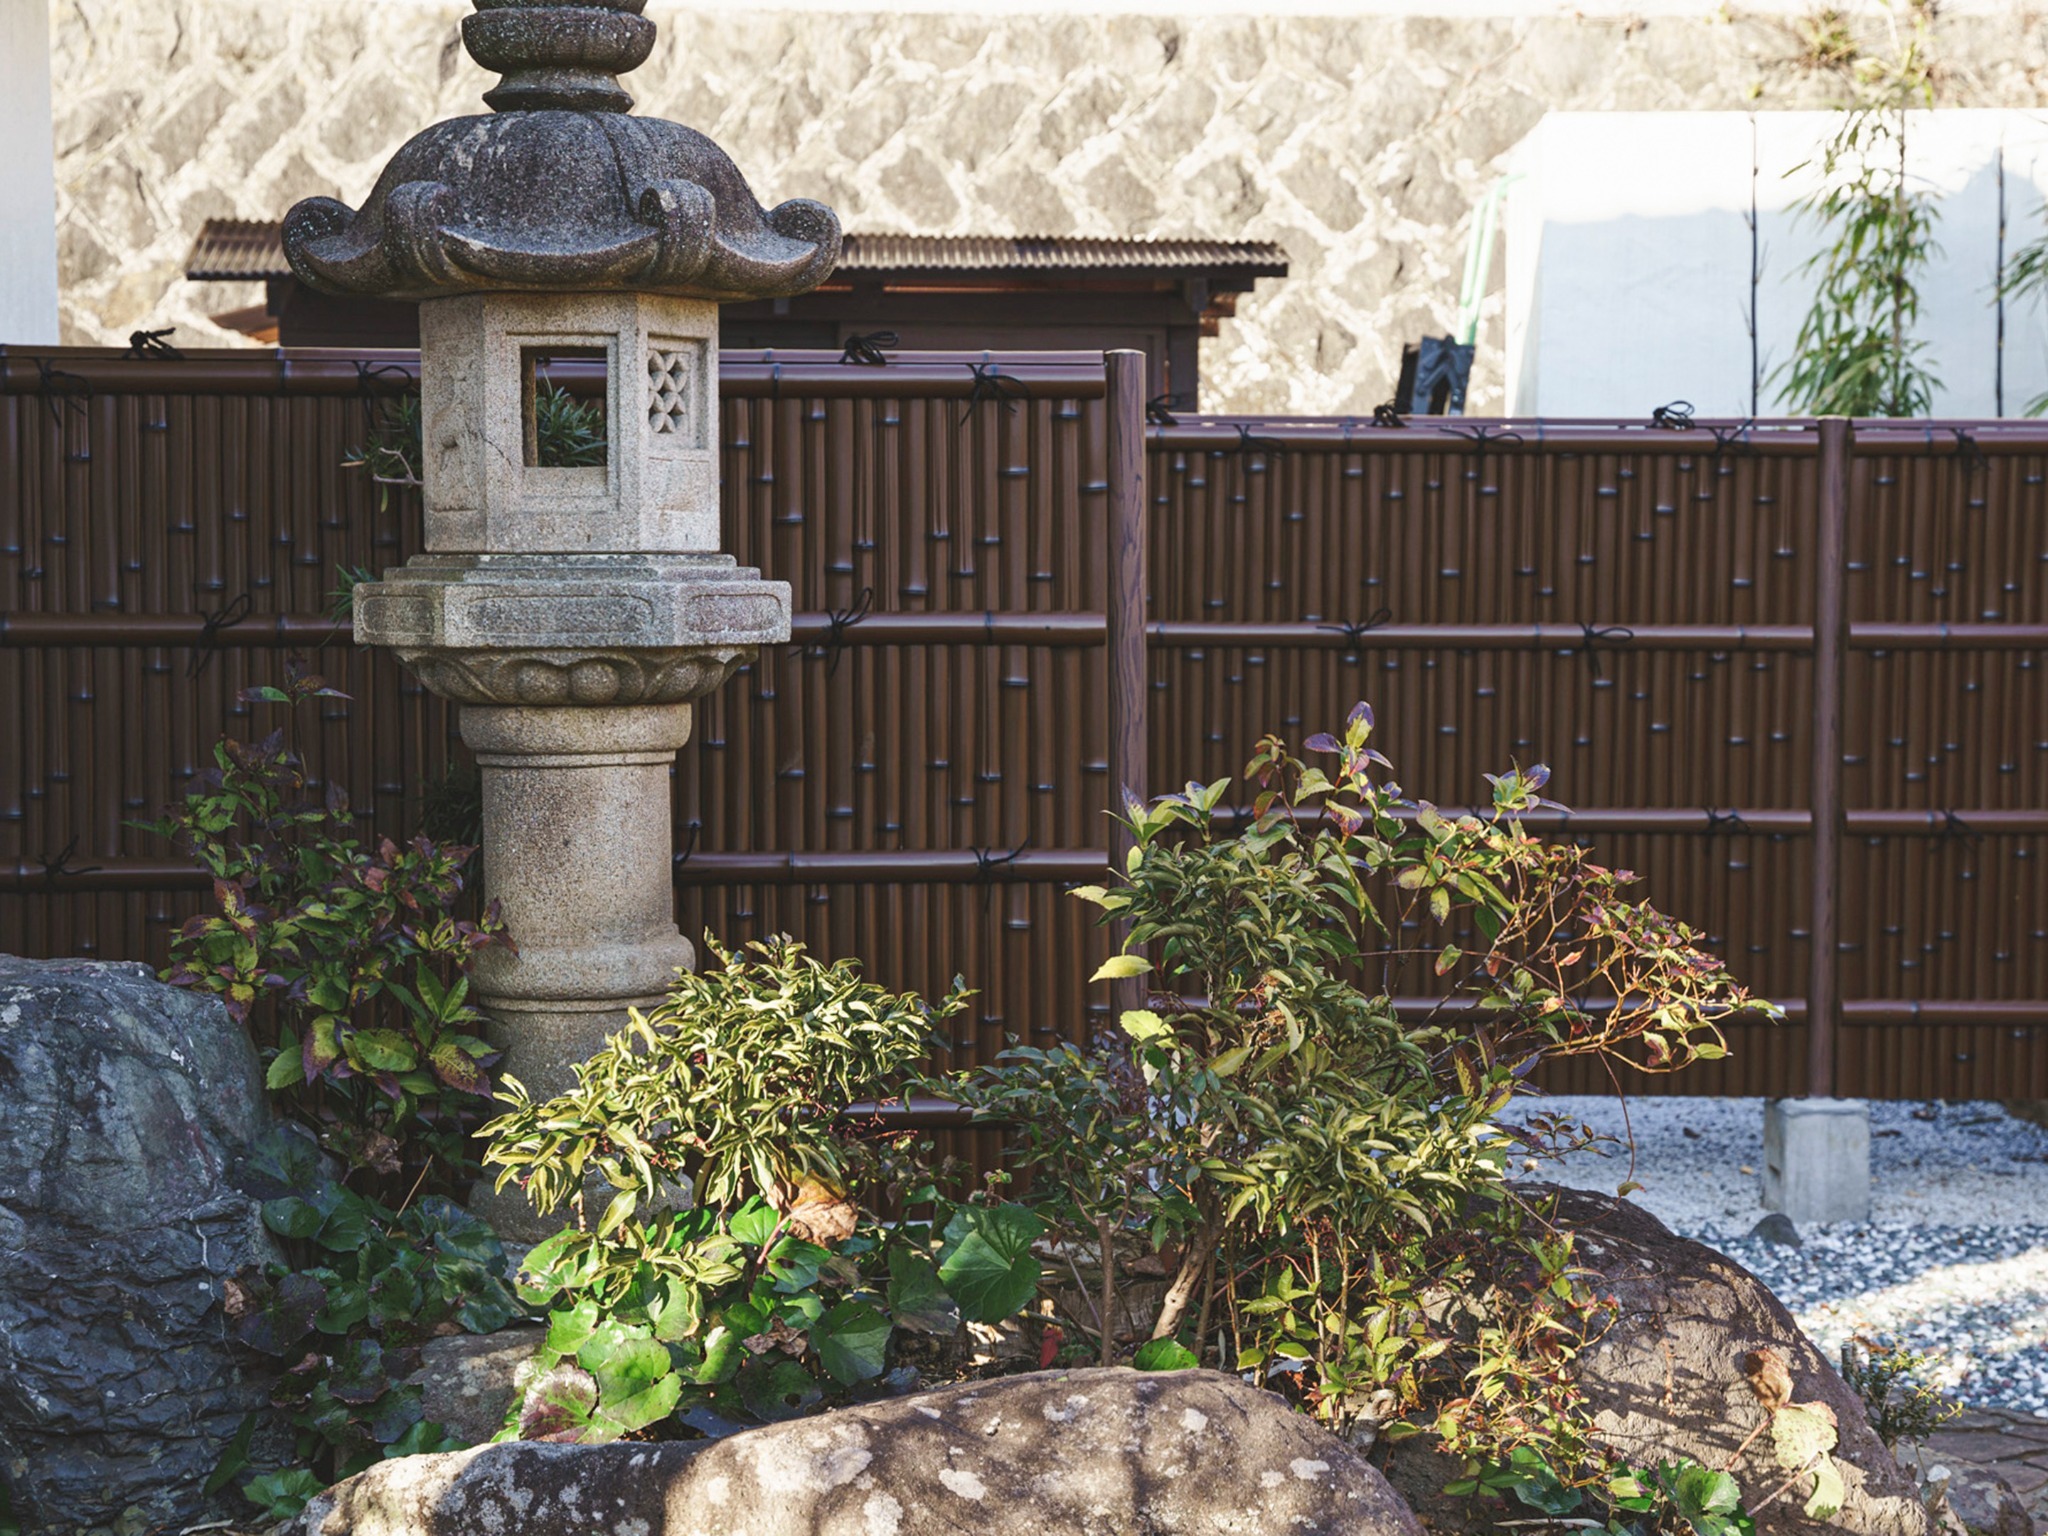 ・【庭園】古き良き和風庭園らしさのある石灯籠。どこか懐かしい気分にさせてくれます